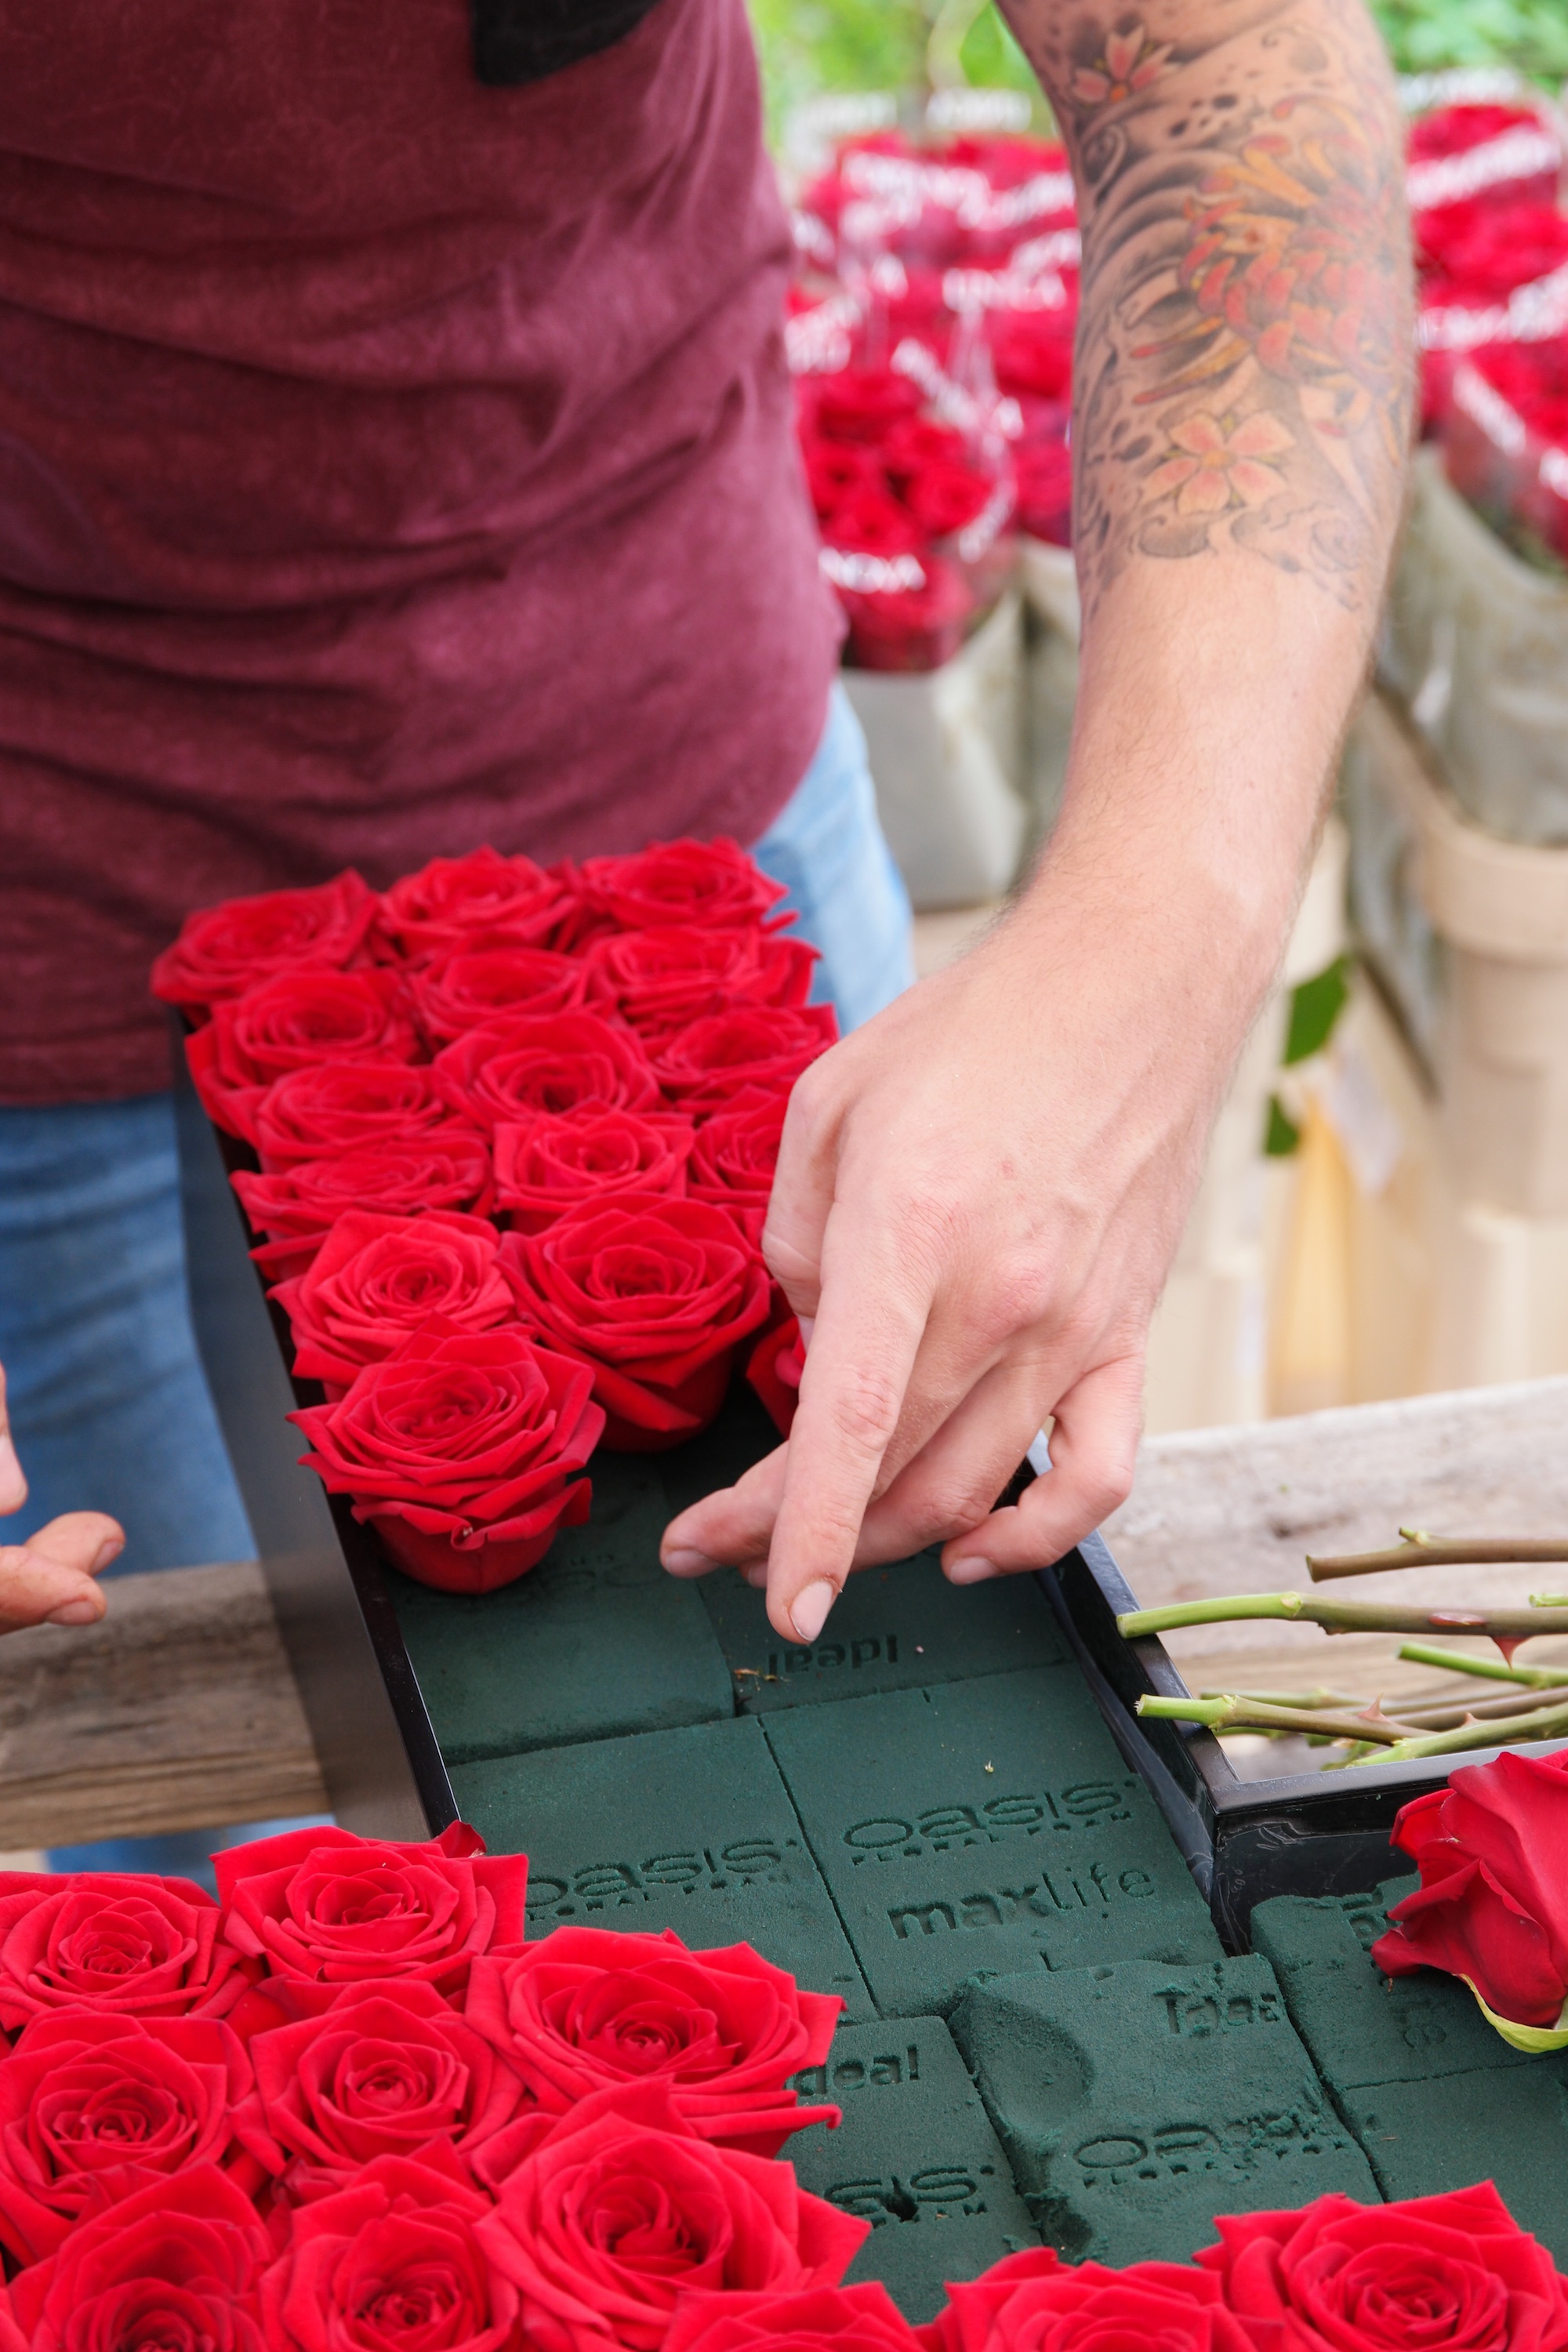 Les roses Red Naomi sont proprement agencées dans le cadre en croix en utilisant de la mousse florale Oasis. 